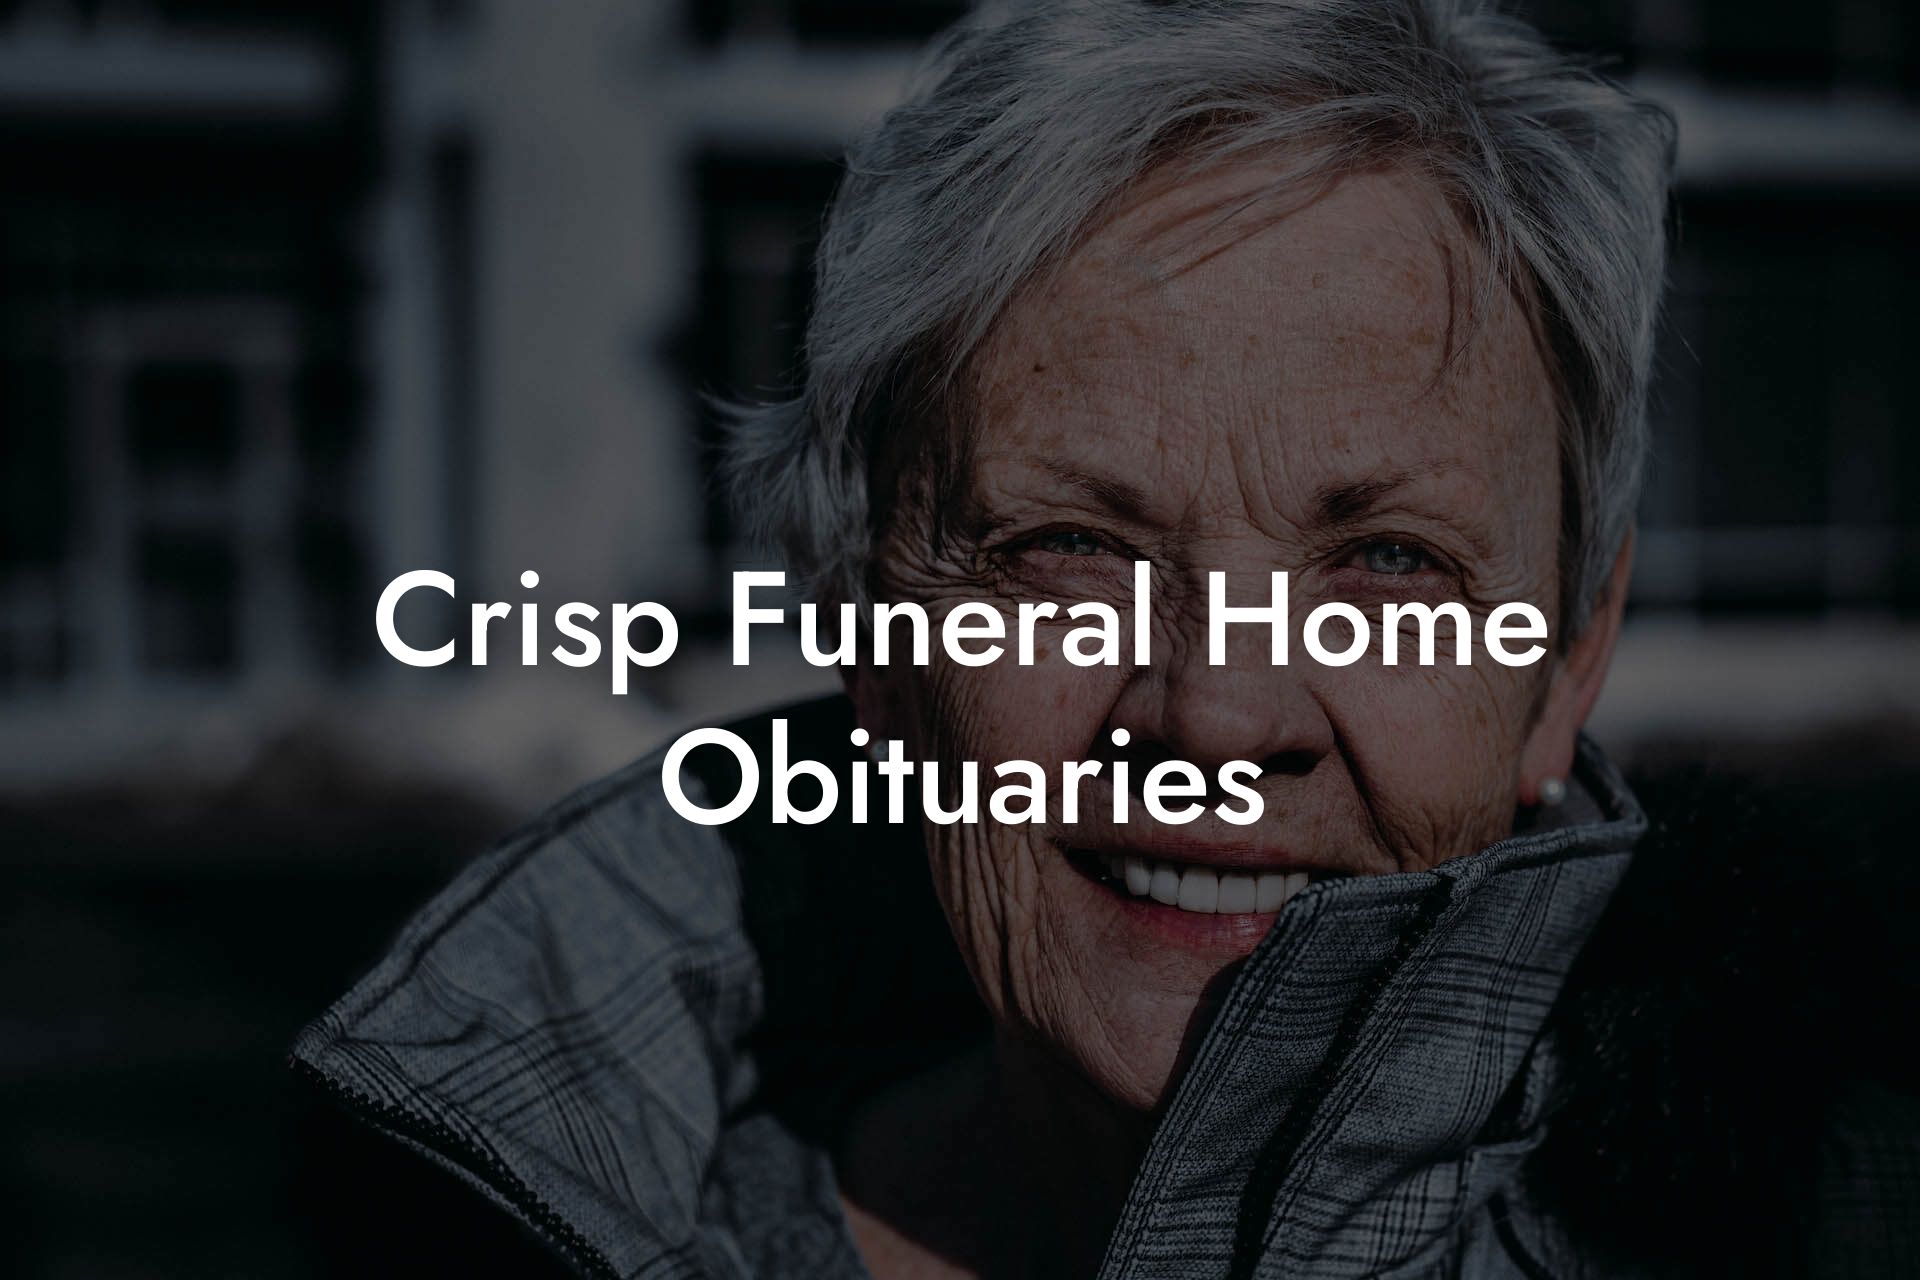 Crisp Funeral Home Obituaries